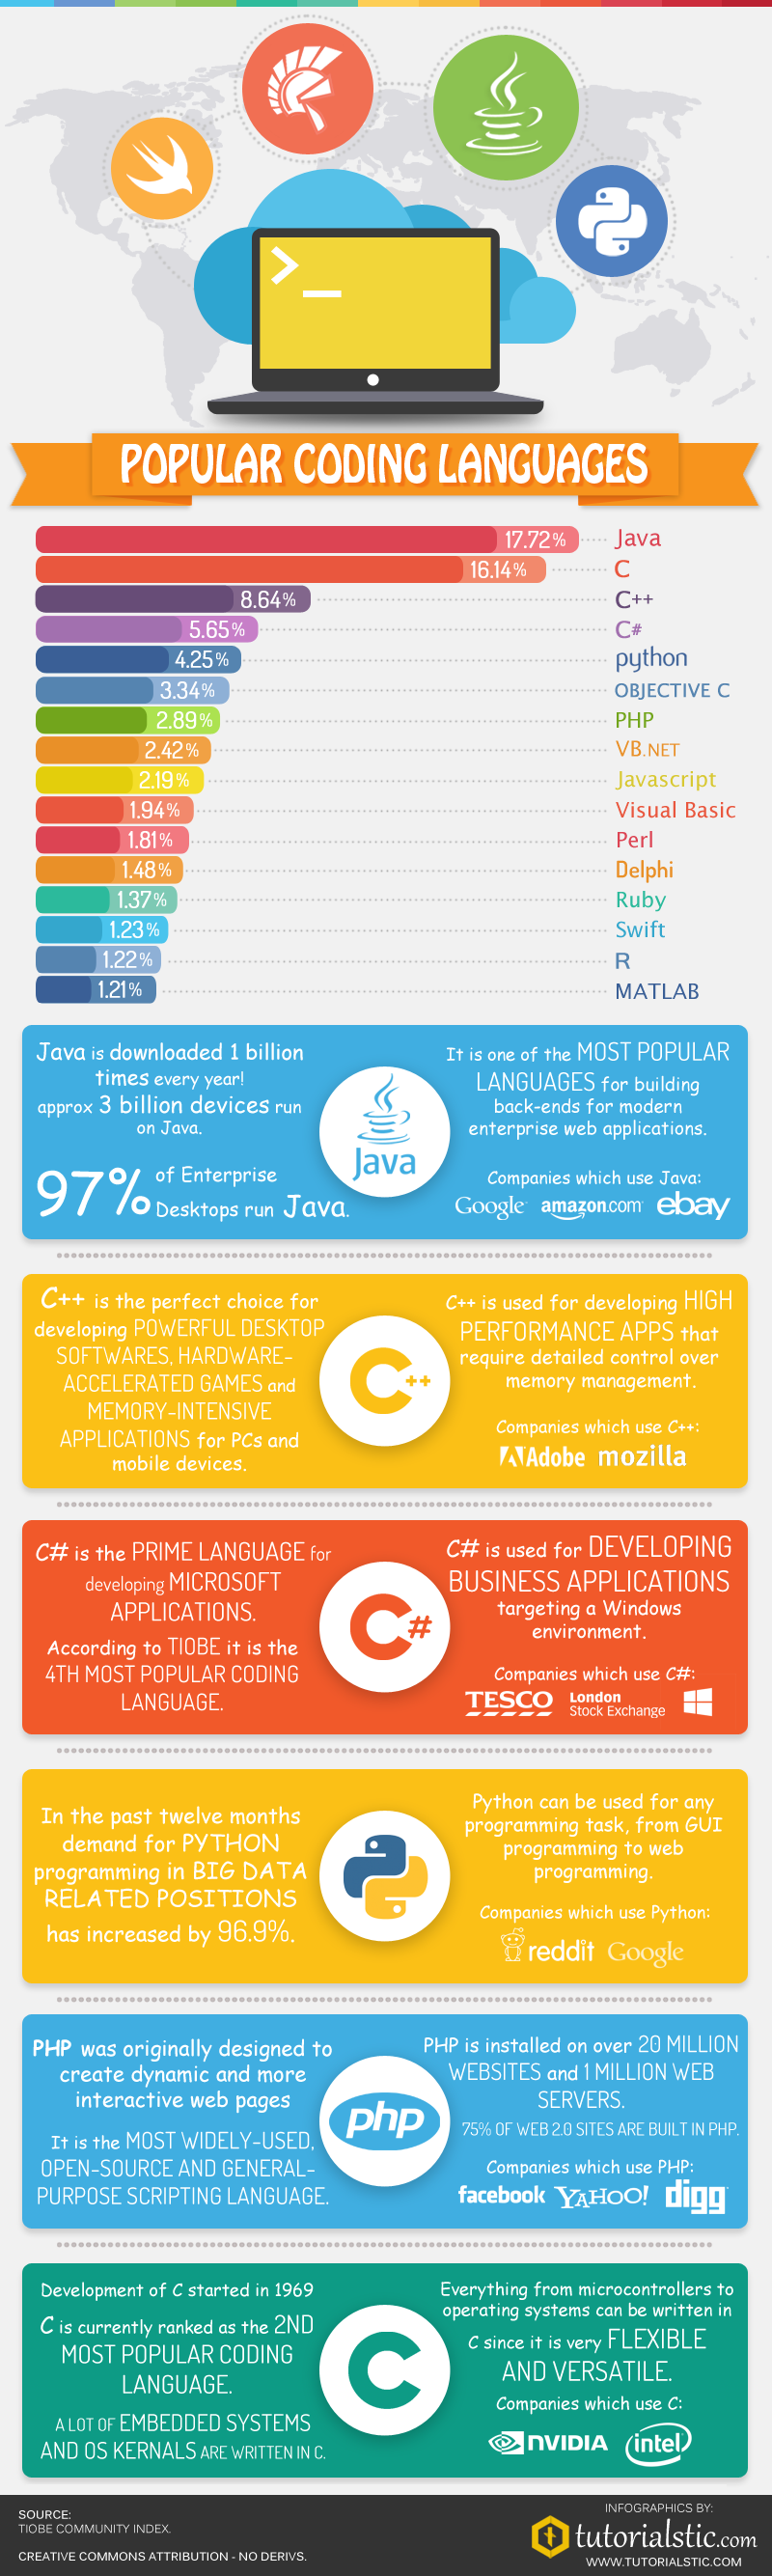 popular coding languages 2015